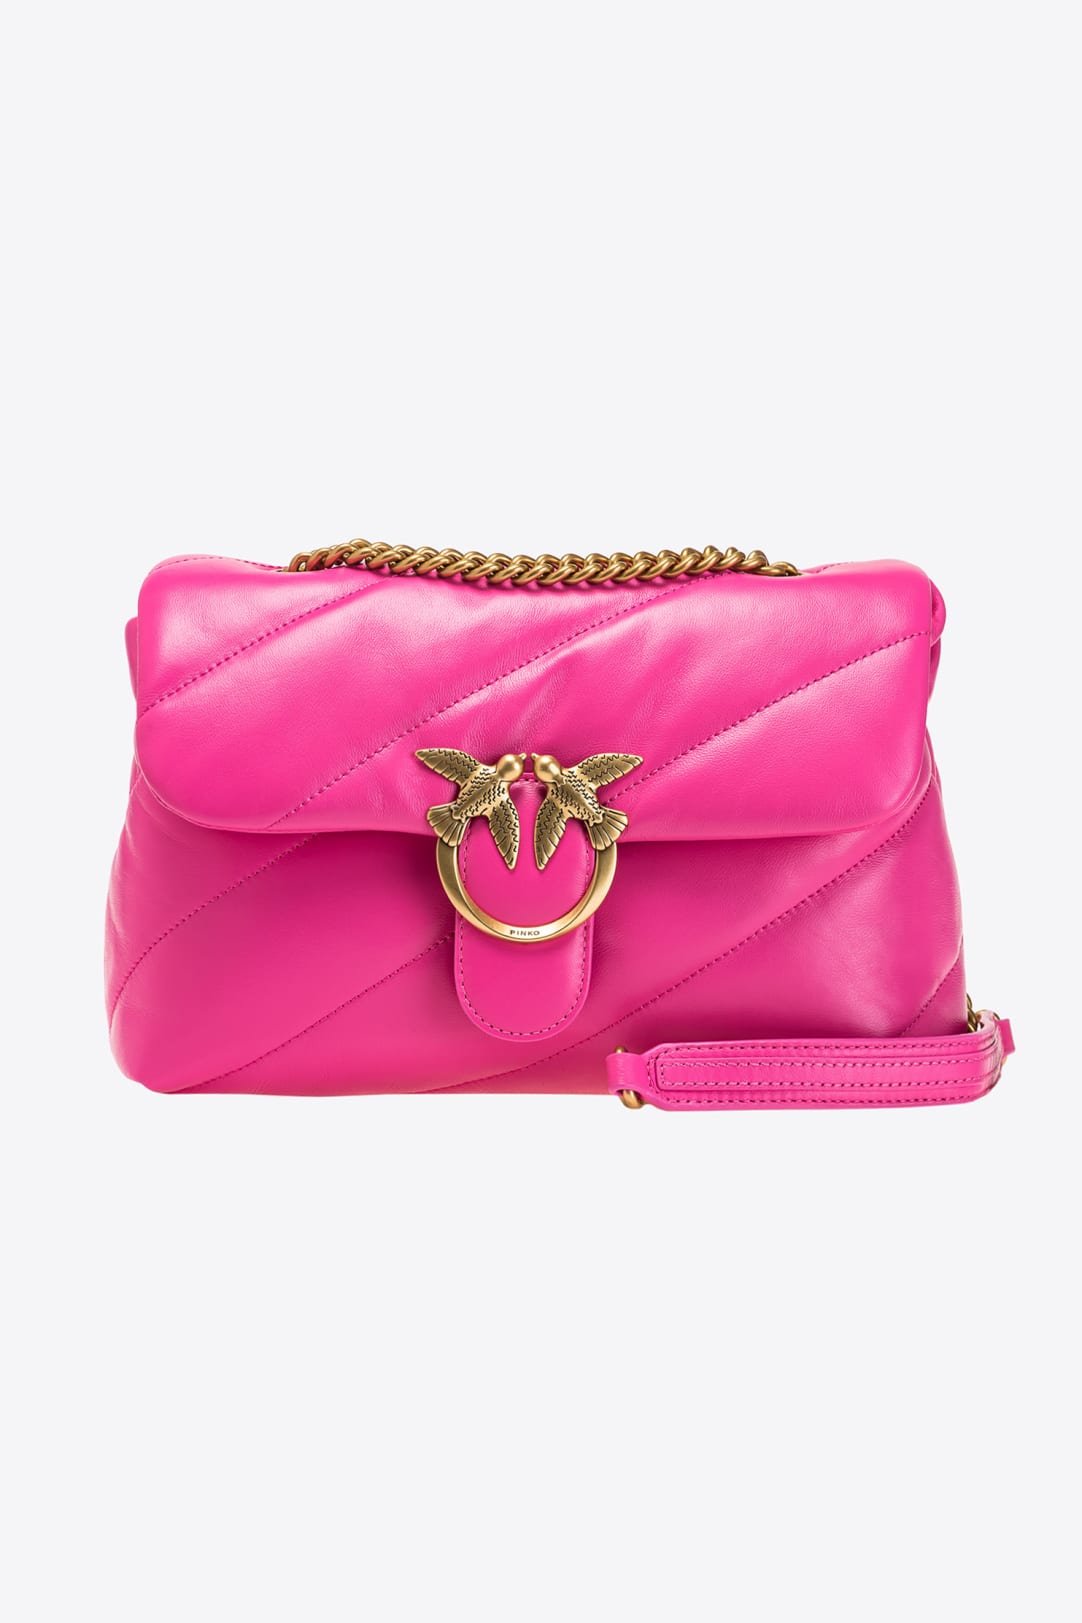 Pinko Pink Bag.jpeg